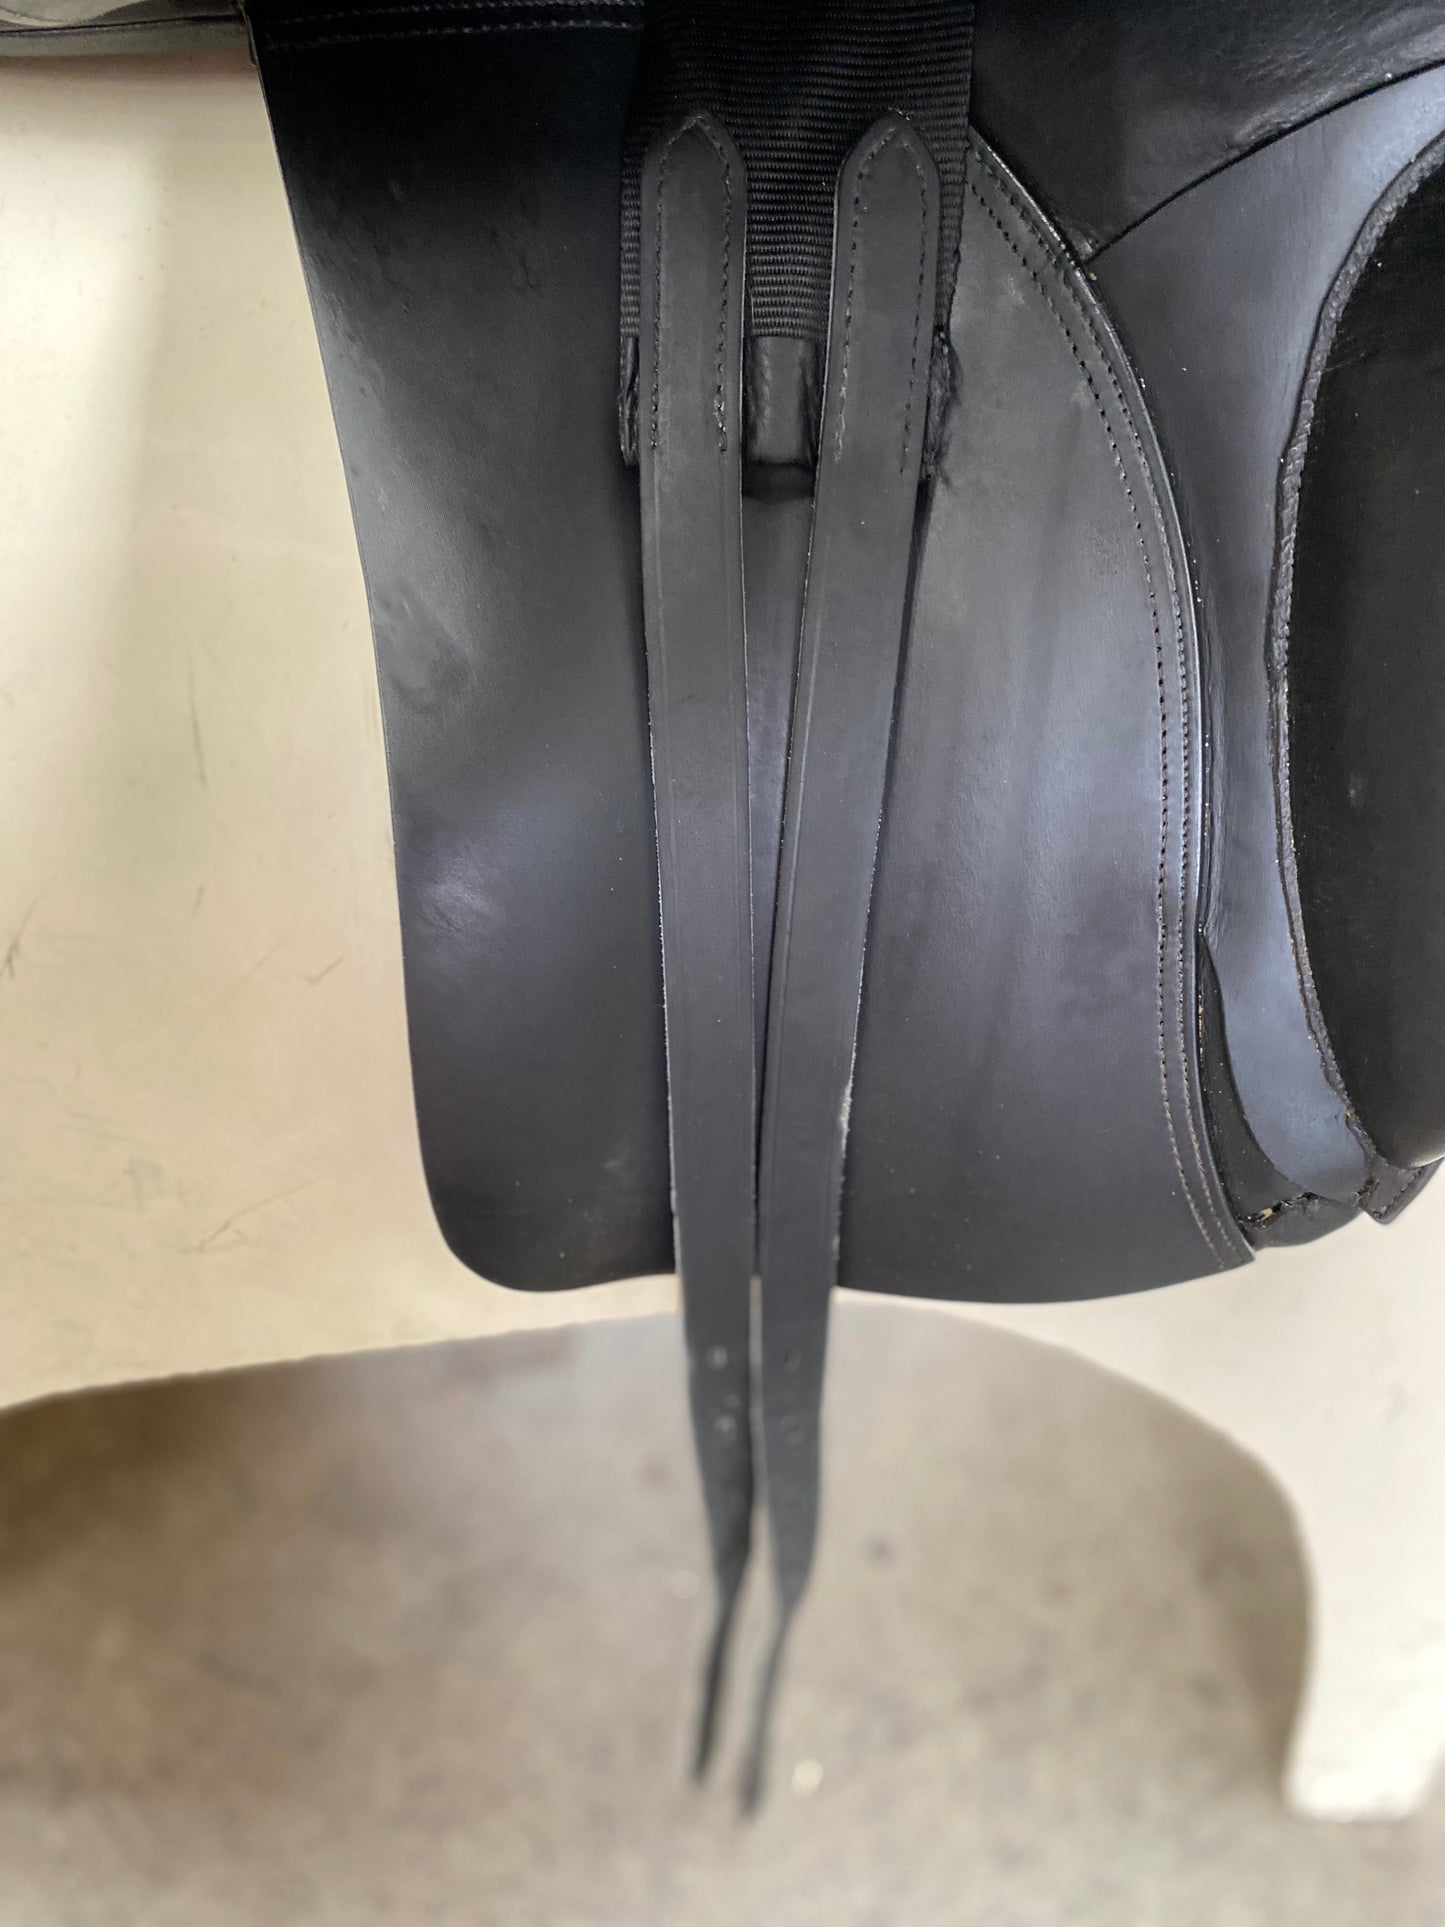 Secondhand Ambassador Dressage Saddle 17.5” Black (2310201)